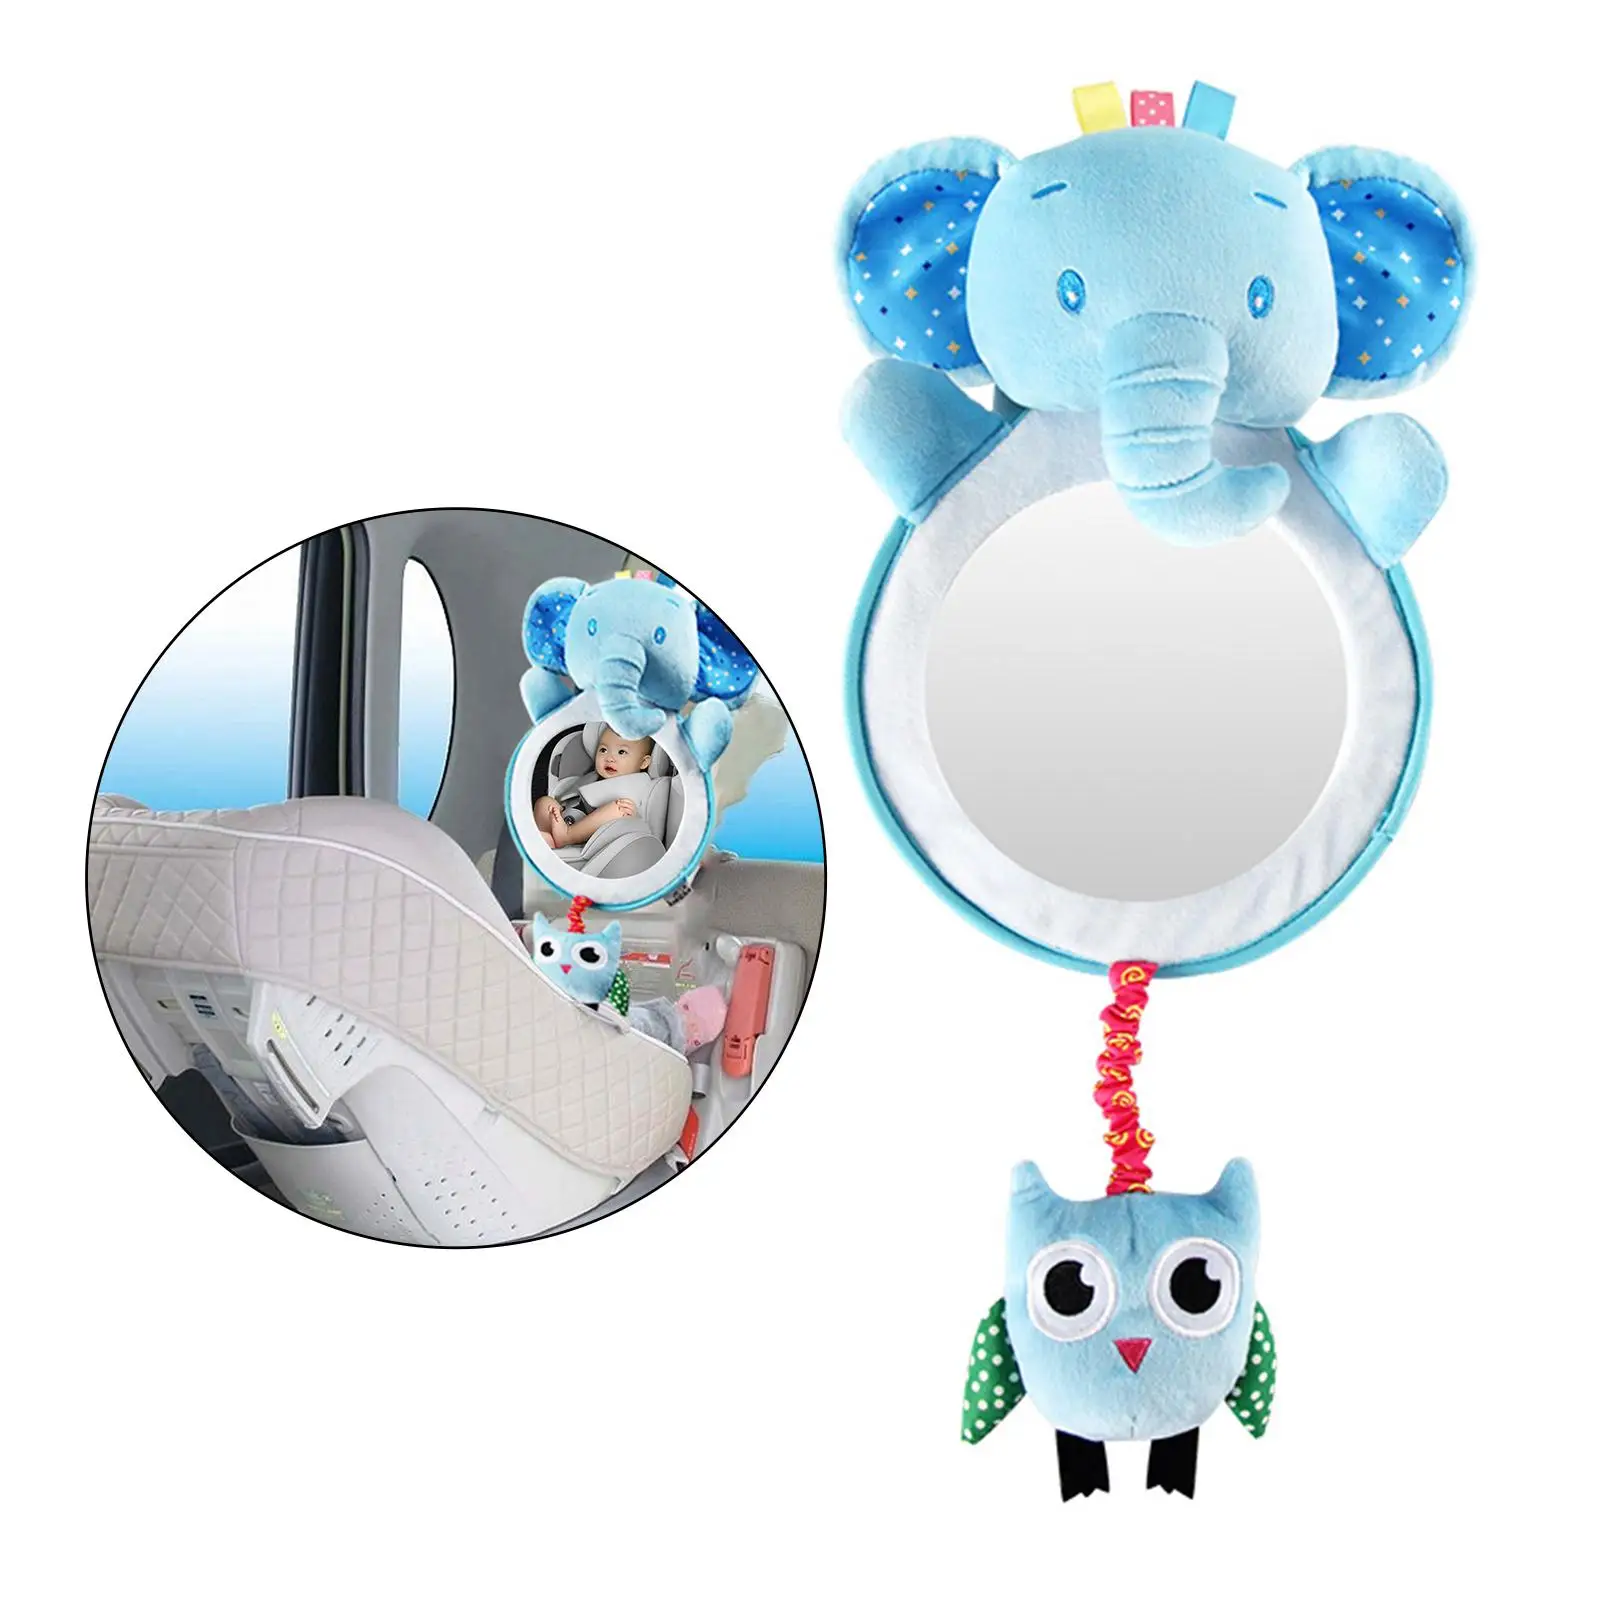 Adjustable Baby Mirror Headrest Safety Seat Rearview Mirror for Kids Children